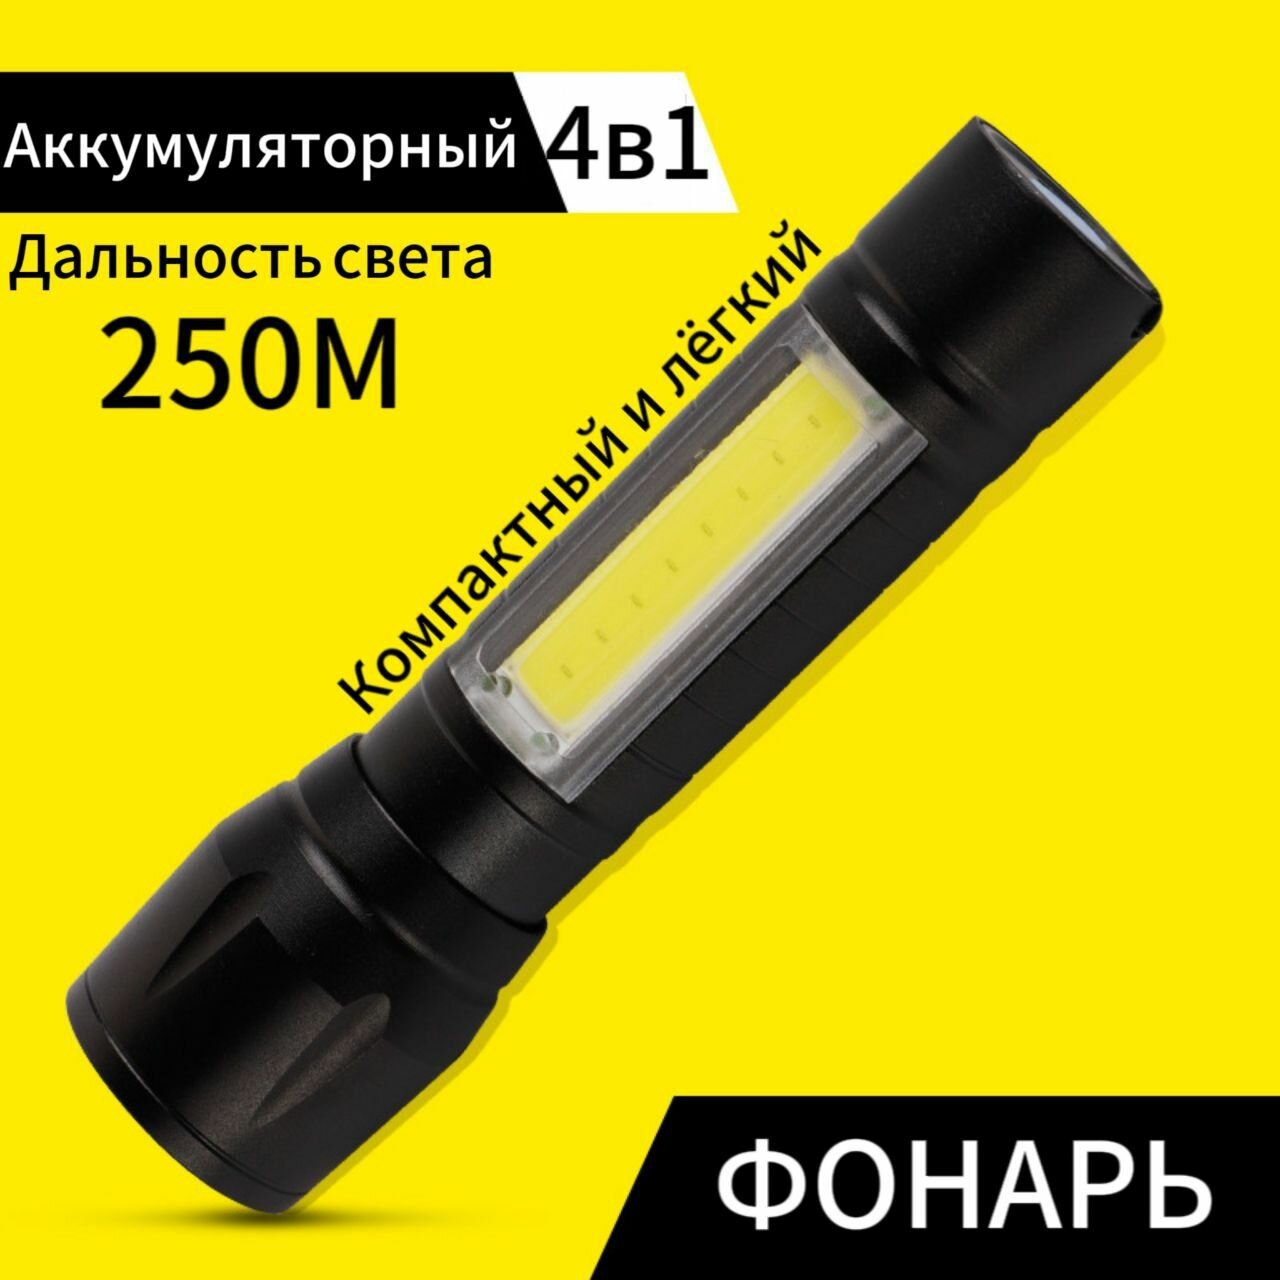 Металлический мощный аккумуляторный мини фонарик ручной 4в1. Светодиодный со стробоскопом с боковым светильником. Бытовой туристический.